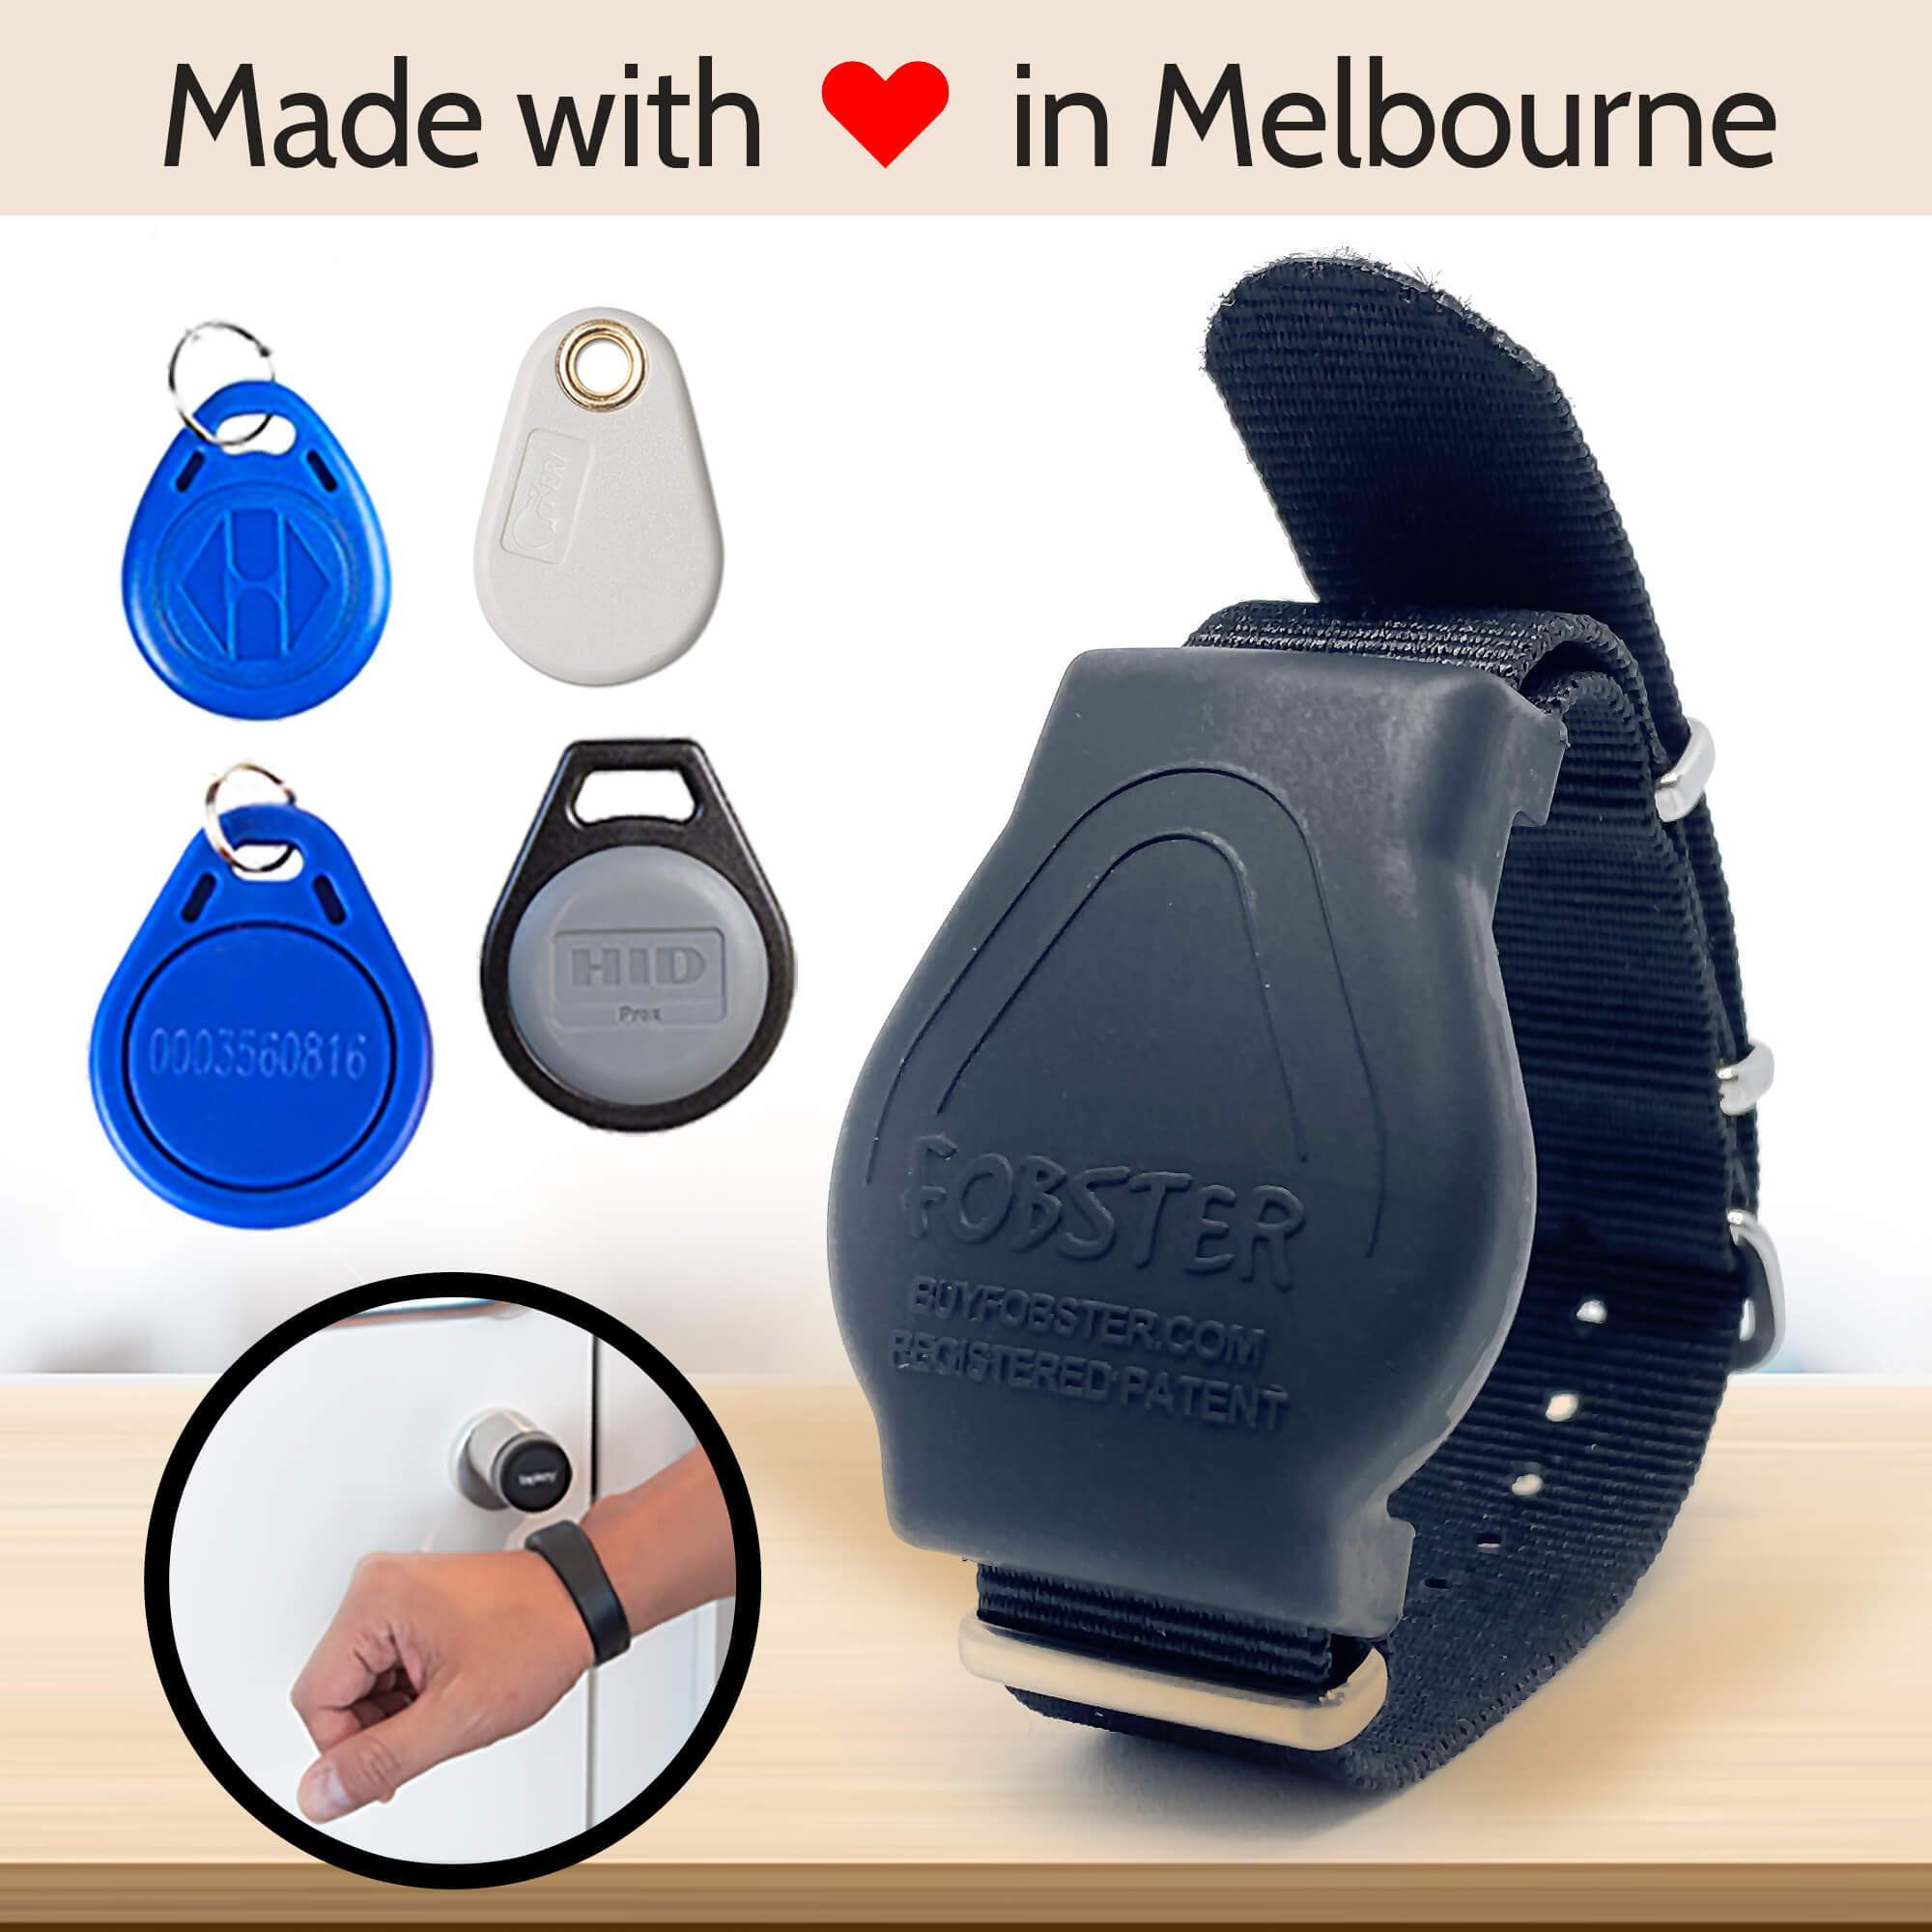 NEW Zebra Animal Print Key Fob Bracelet - keychain key ring - tassle gift  free shipping #TPPH